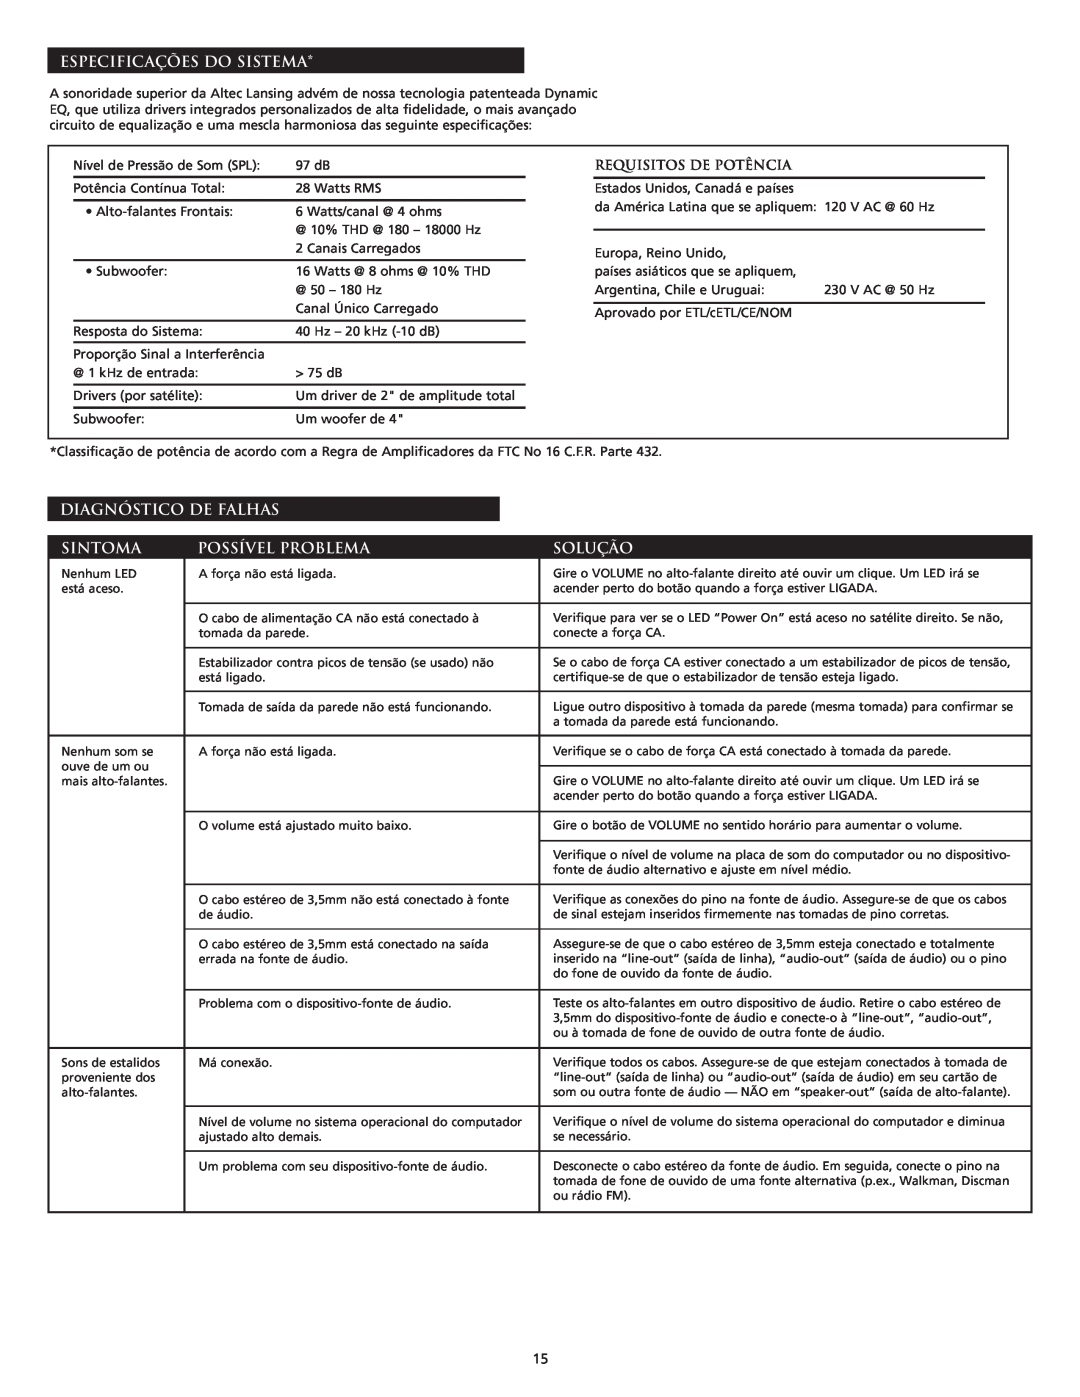 Altec Lansing VS2121 manual Especificações Do Sistema, Diagnóstico De Falhas, Sintoma, Possível Problema, Solução 